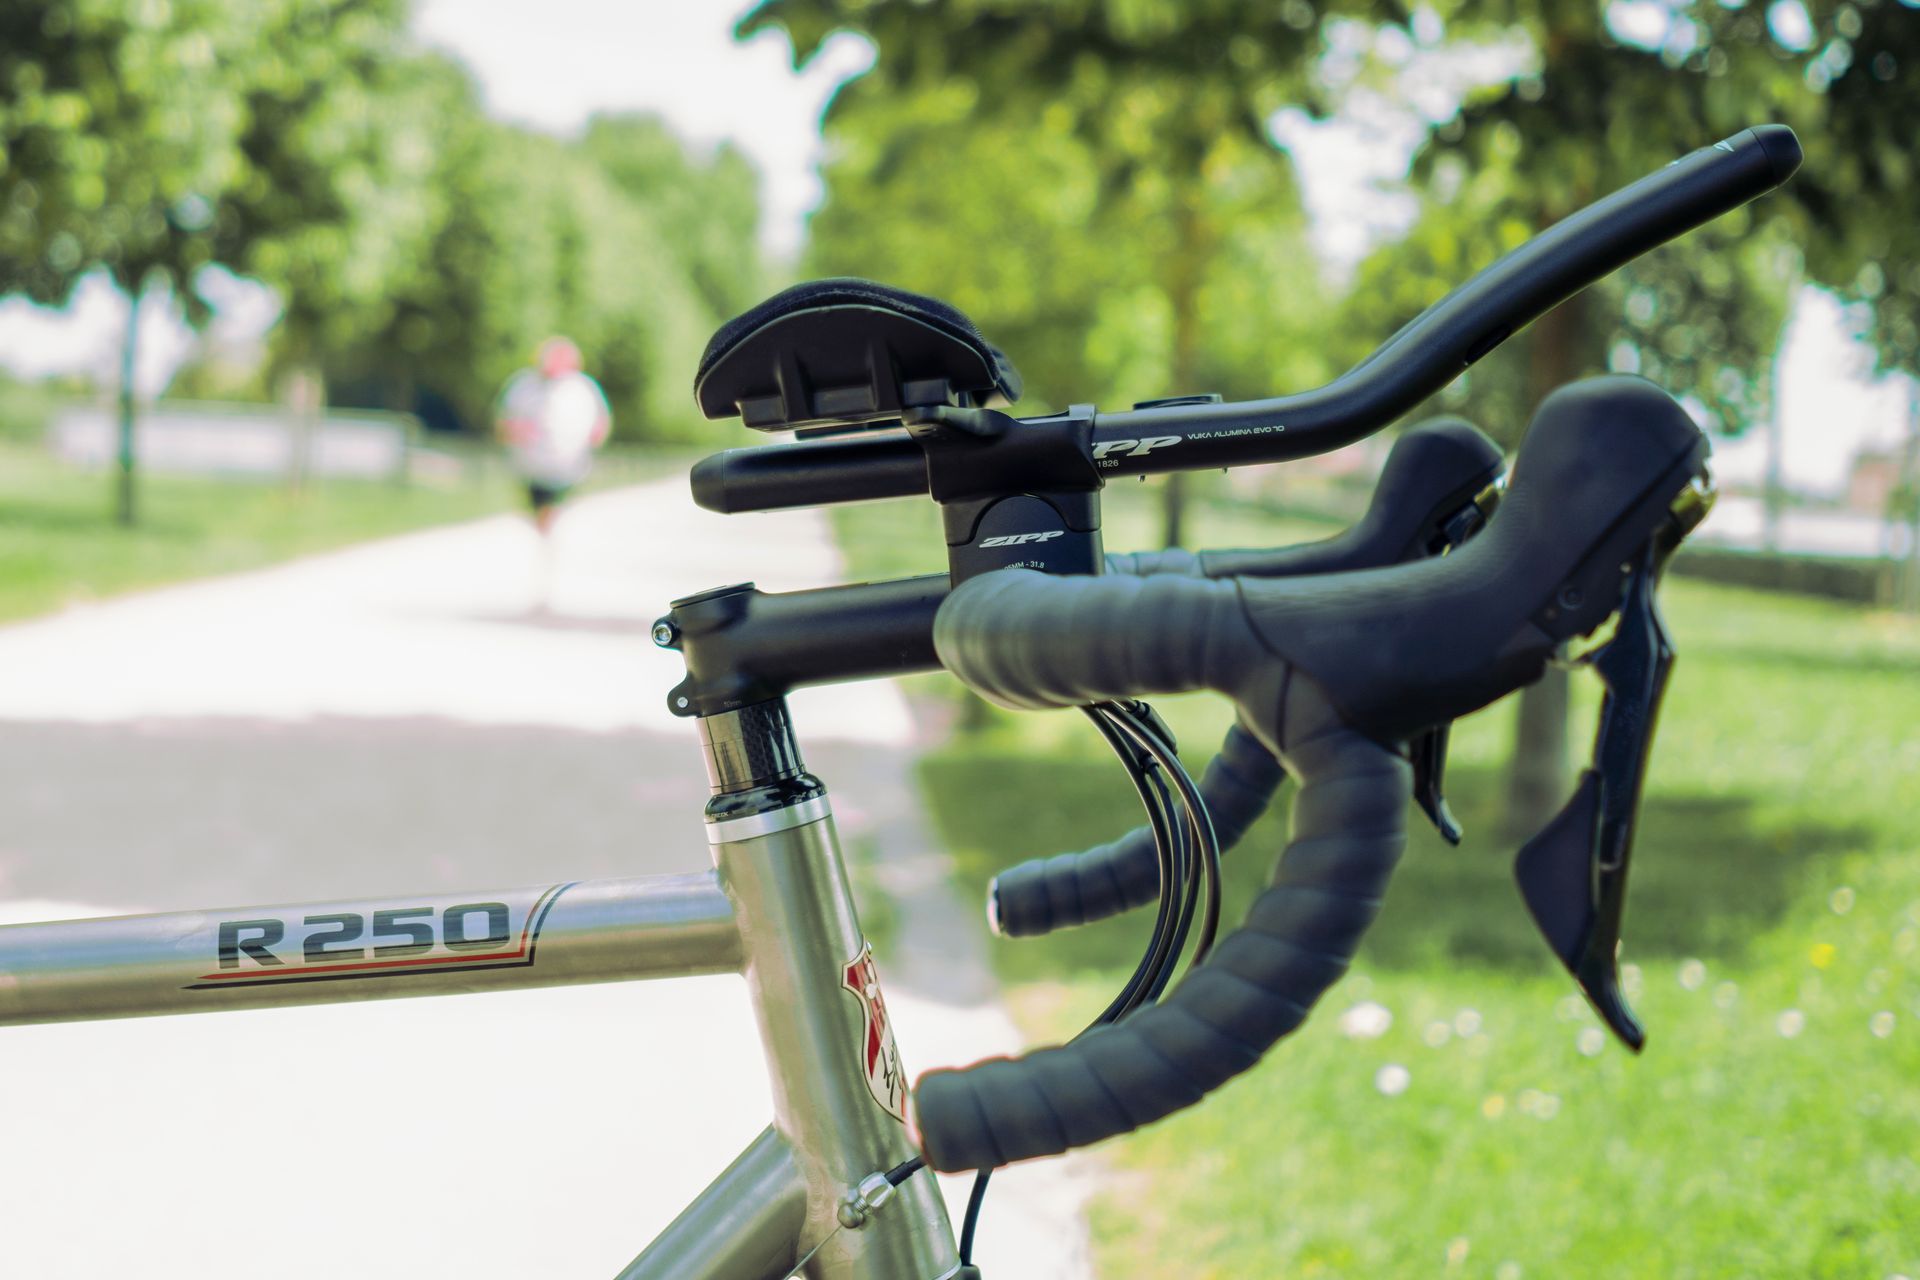 Magasin de cycles et atelier de réparation velo et montage vélo à la carte à Paris 13eme spécialisé dans le gravel et le voyage. prolongateur sur cintre route pour velo d'endurance